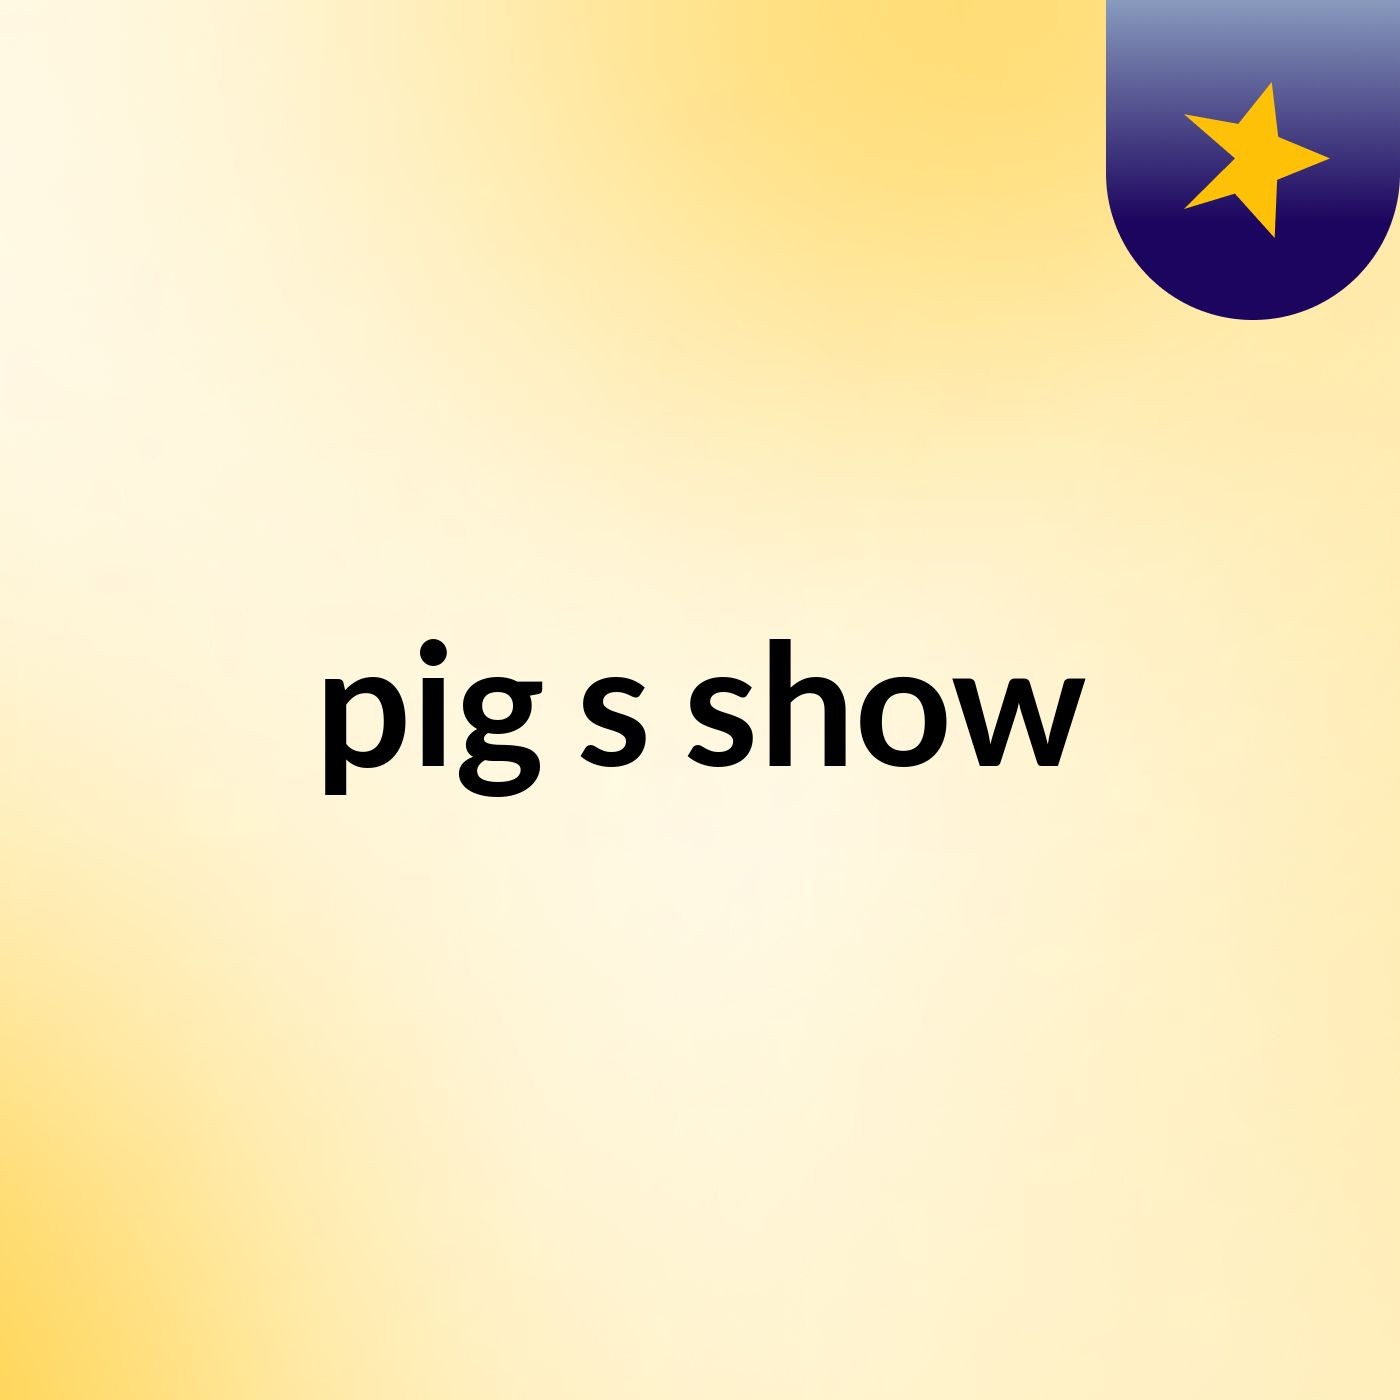 pig's show